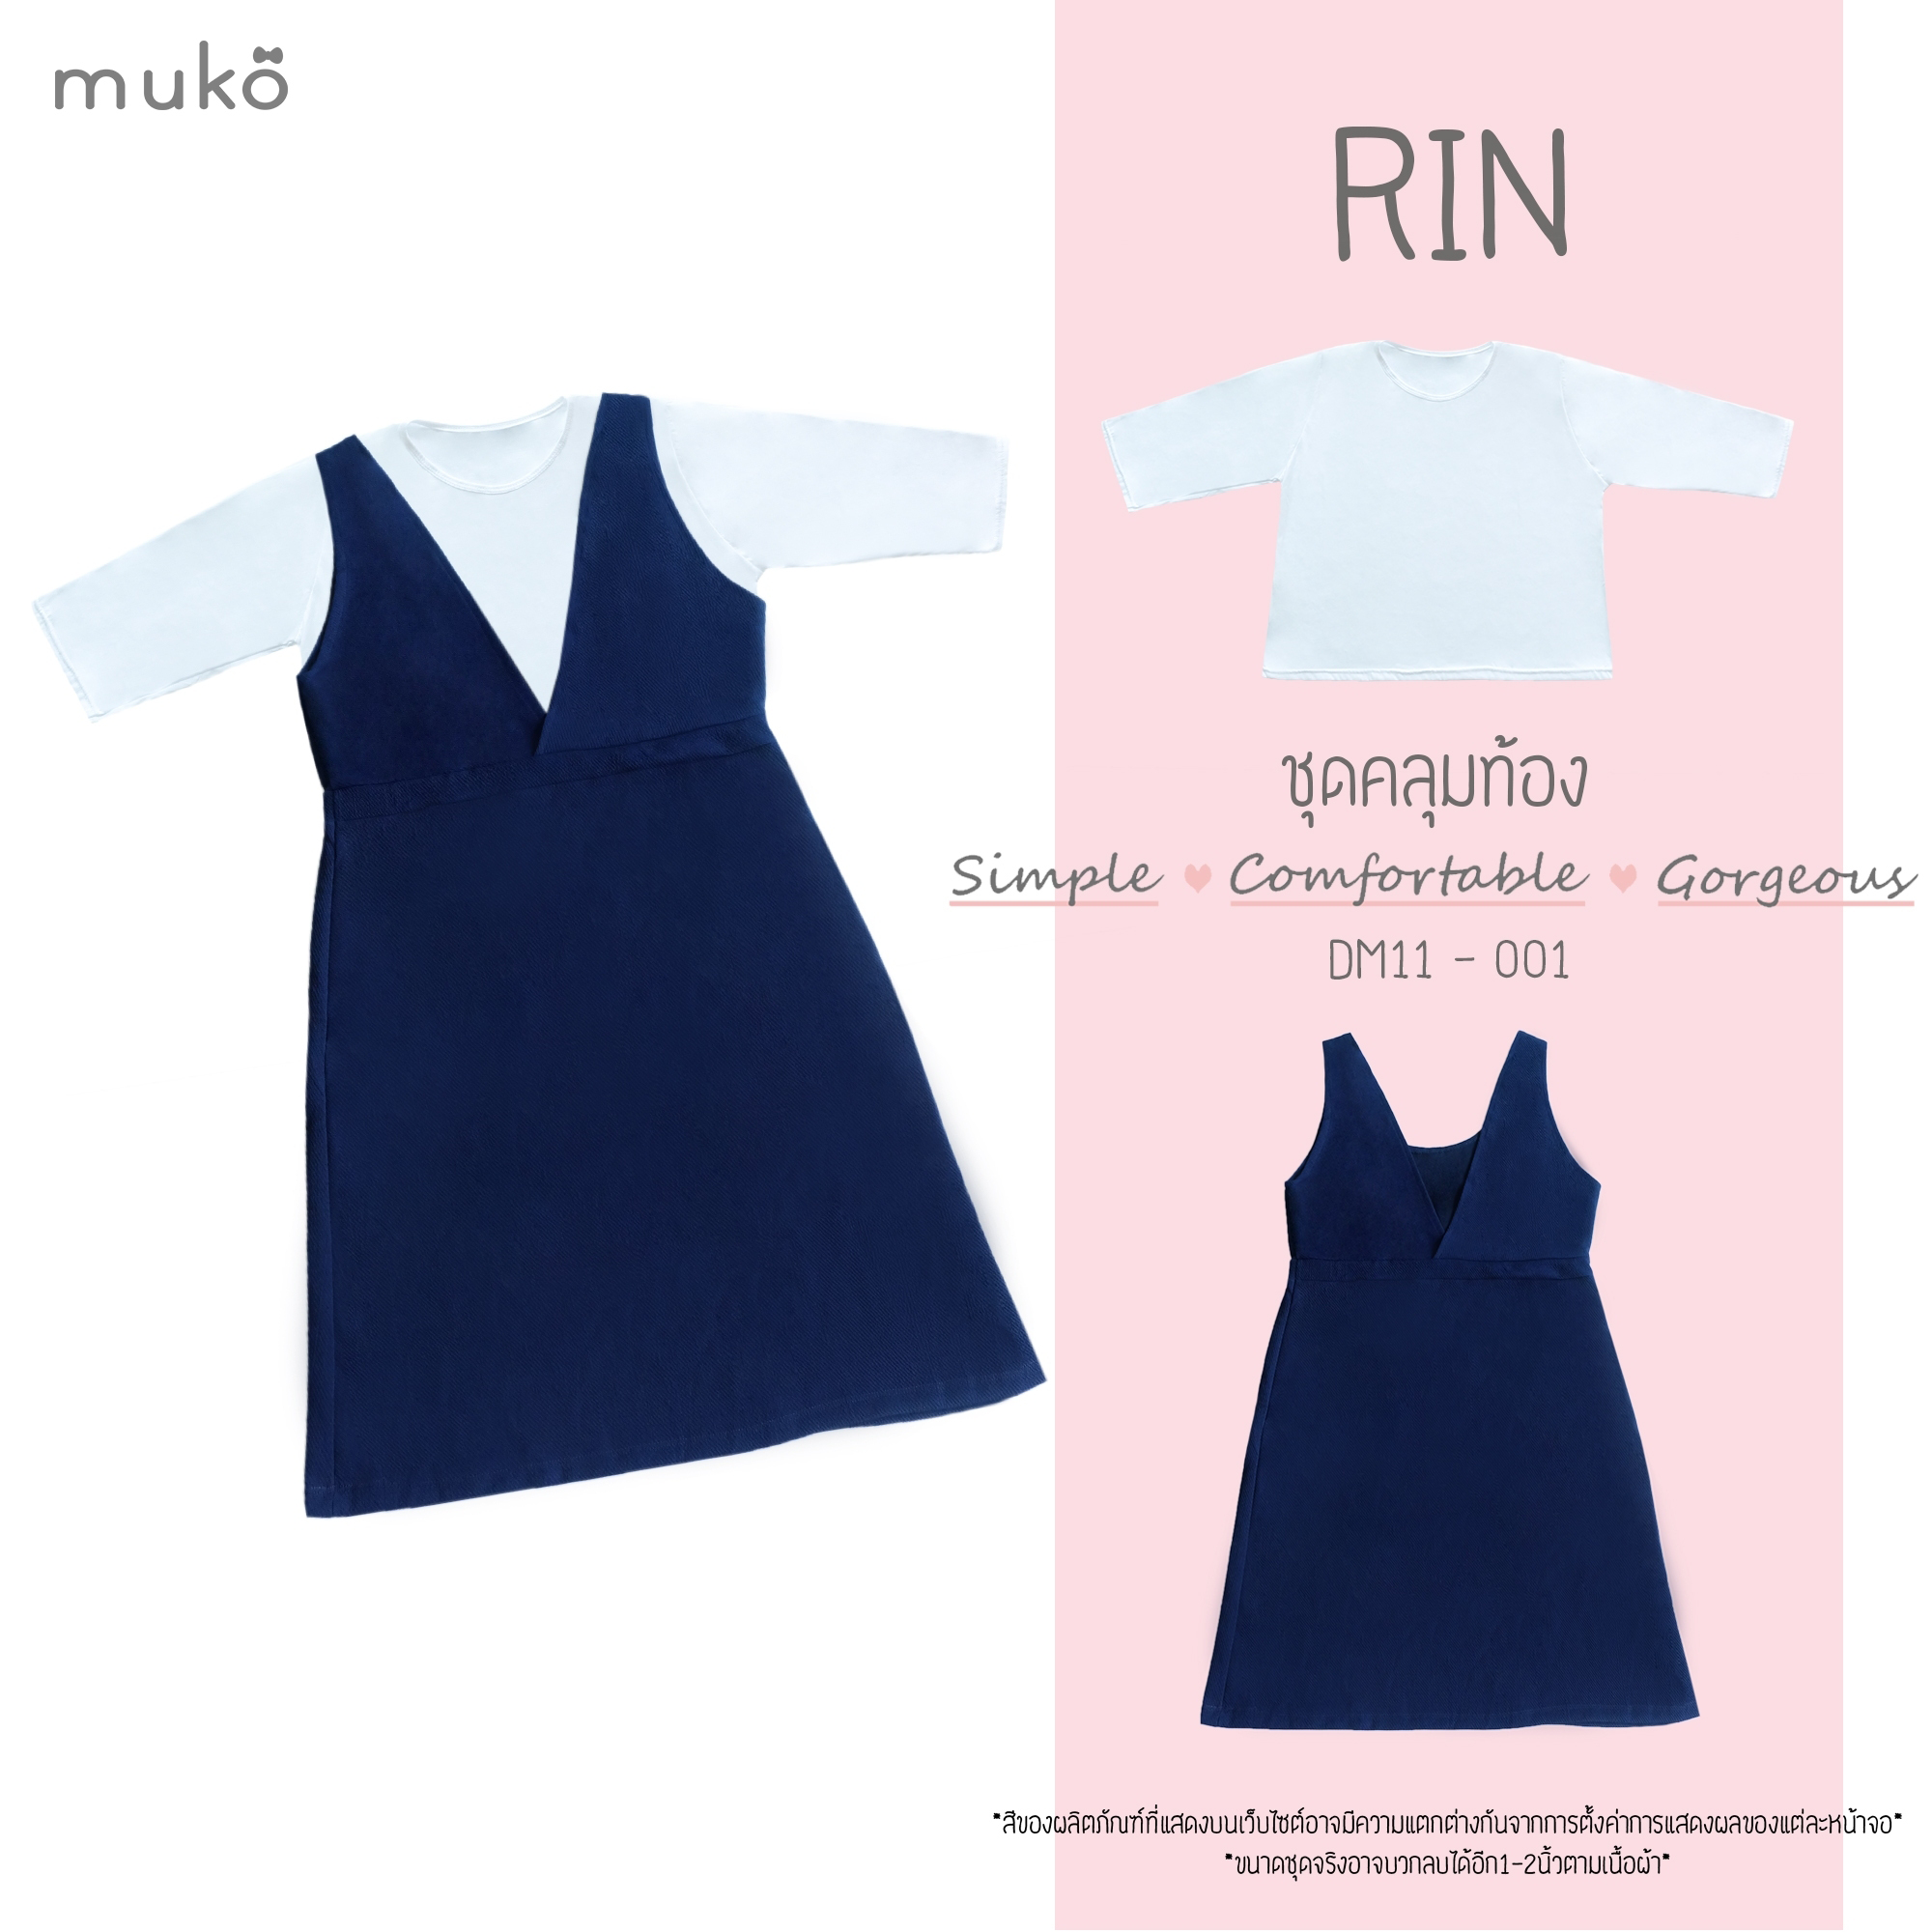 Muko Rin ชุดเซ็ต (เสื้อและกระโปรงเอี๊ยม) คลุมท้องหรือจะใส่แฟชั่นสวยๆก็ได้นะคะ DM11-001 สีกรม